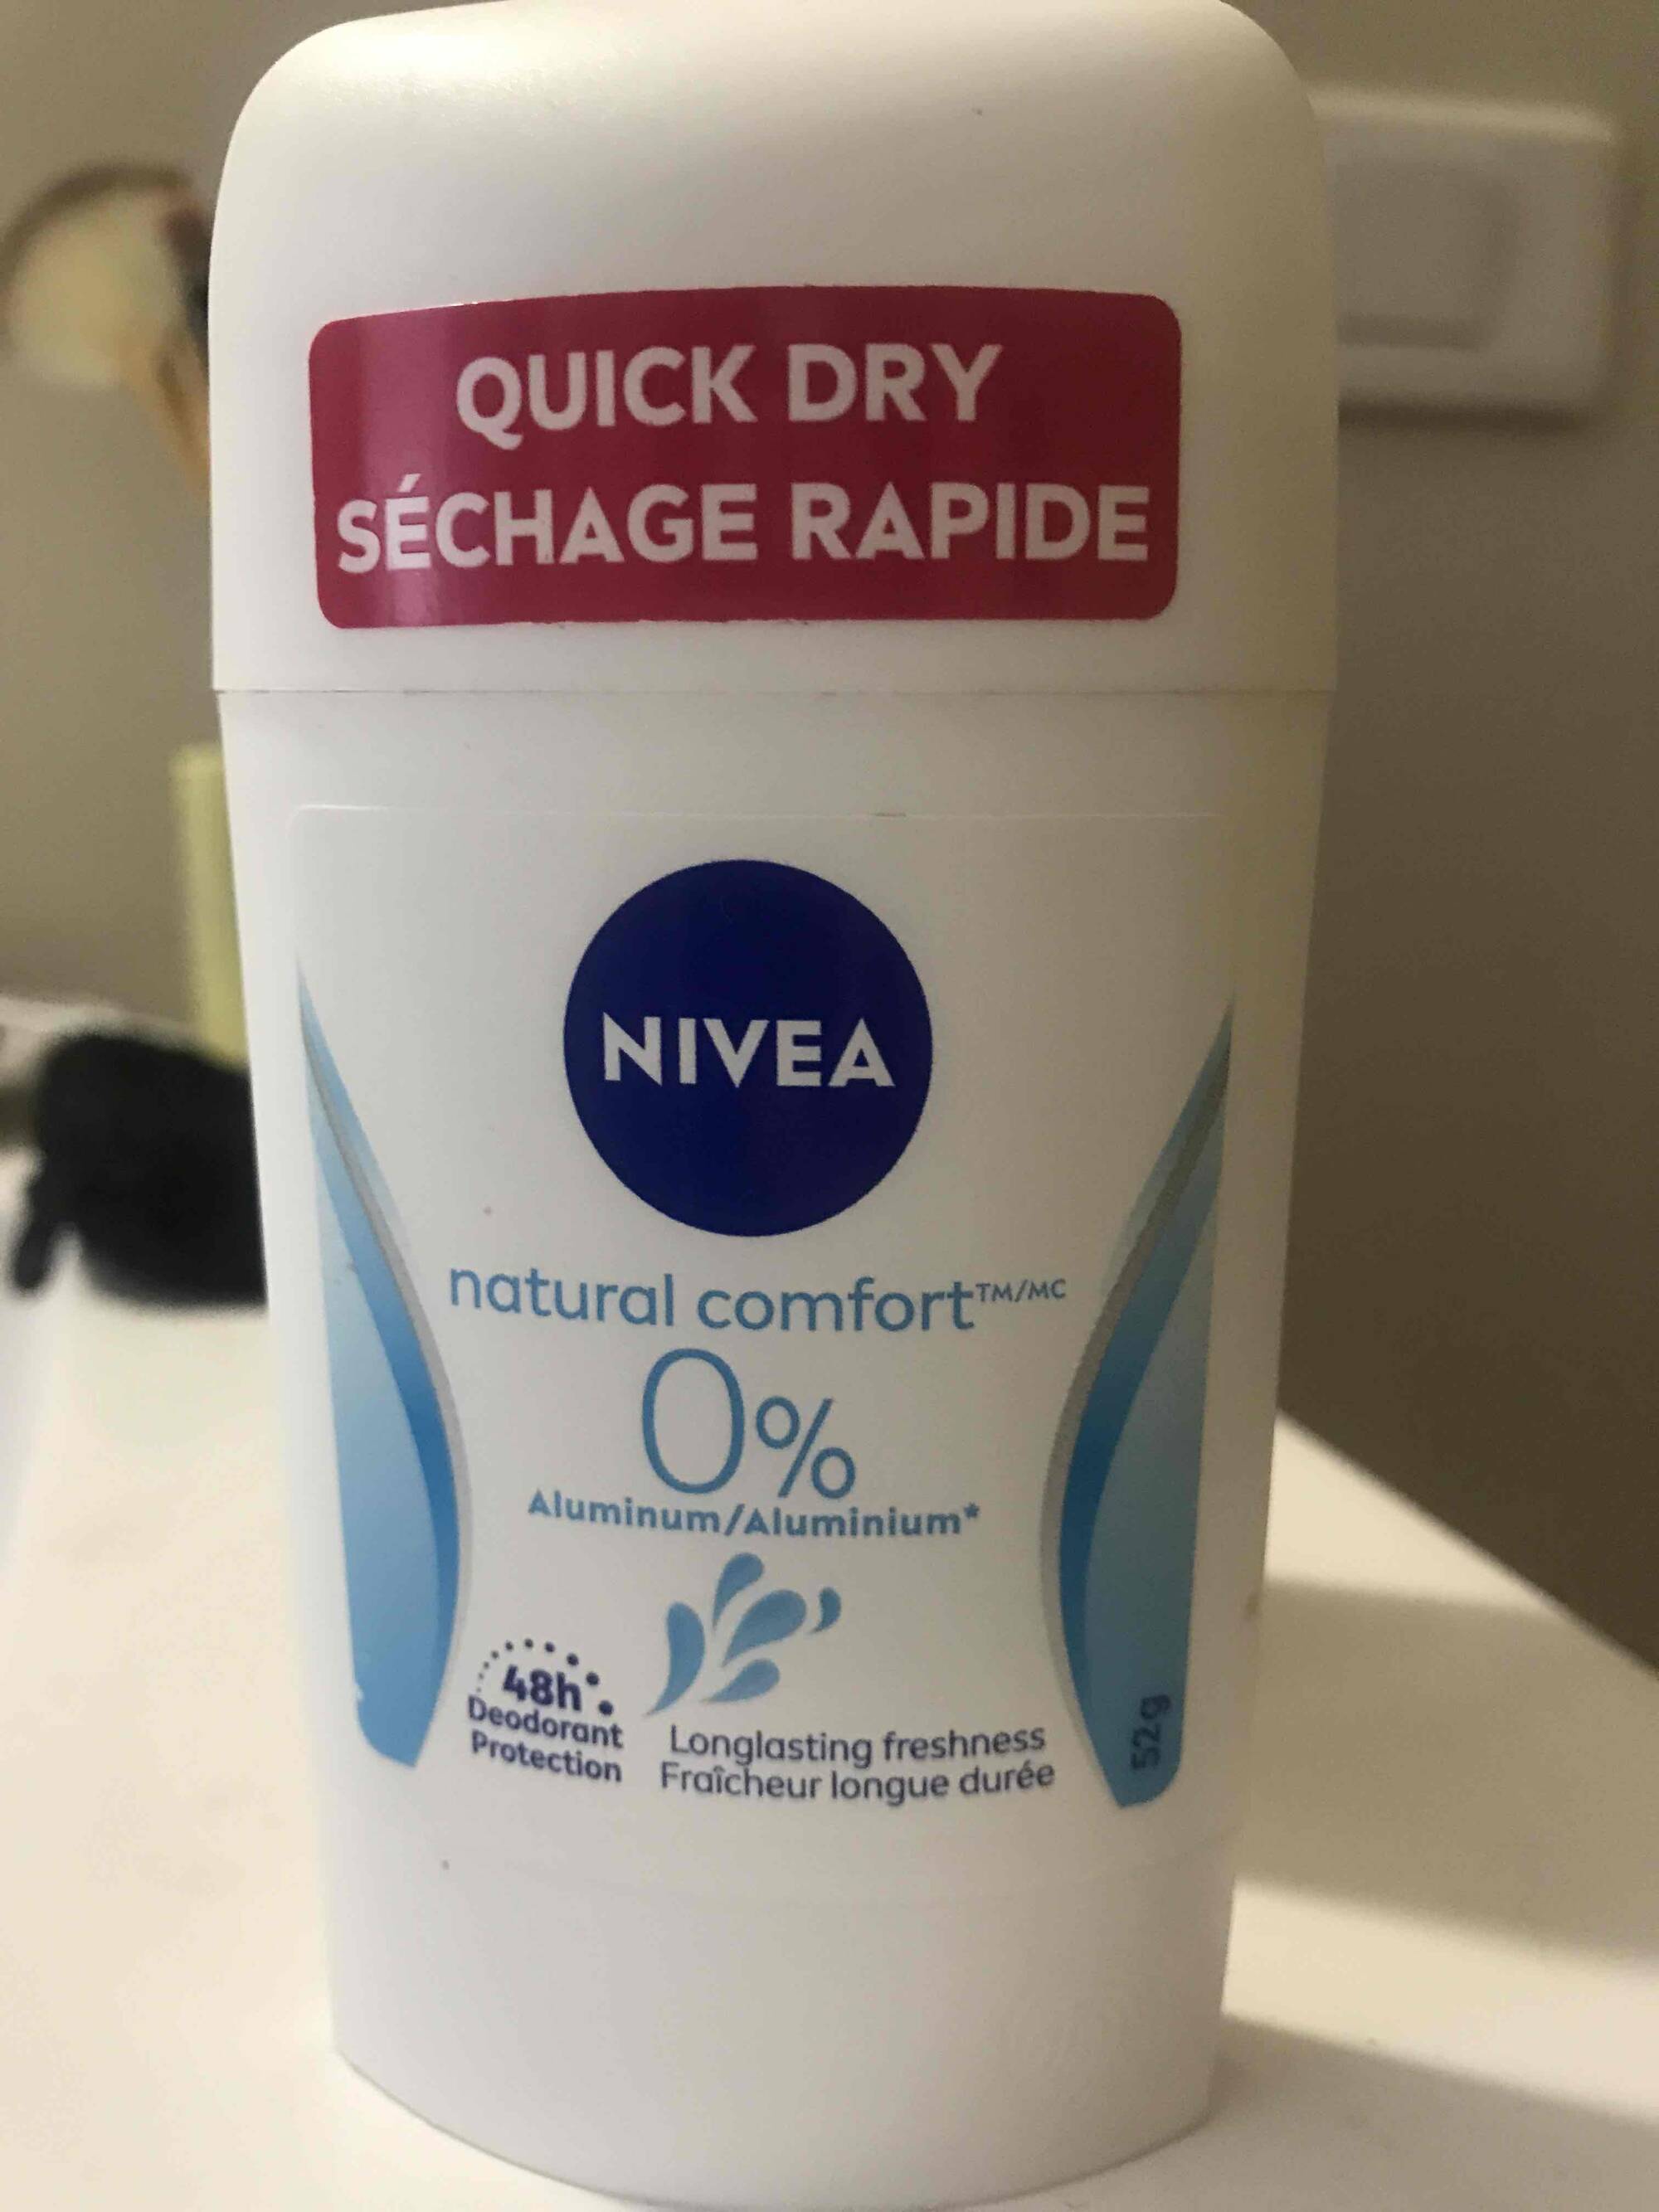 NIVEA - Natural comfort - Quick dry séchage rapide déodorant protection 48h